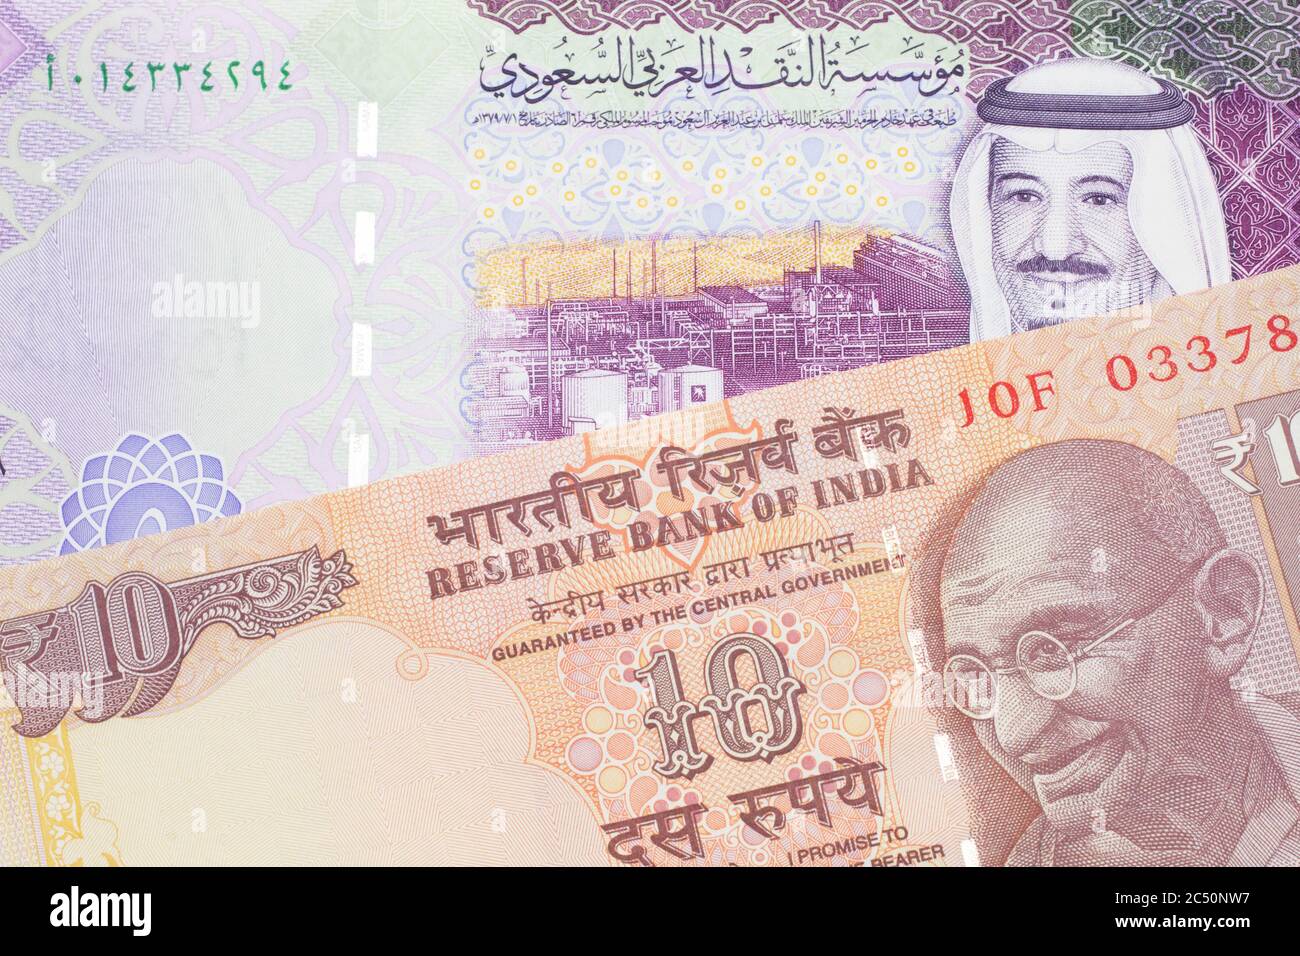 Riyal in indian rupees